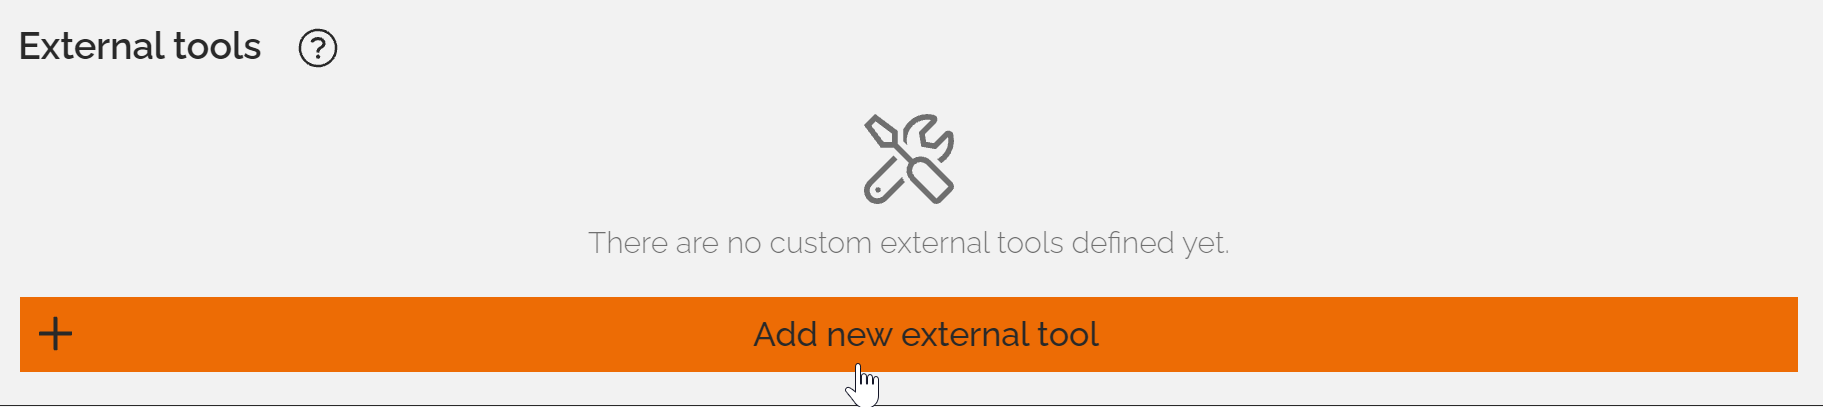 add new external tool